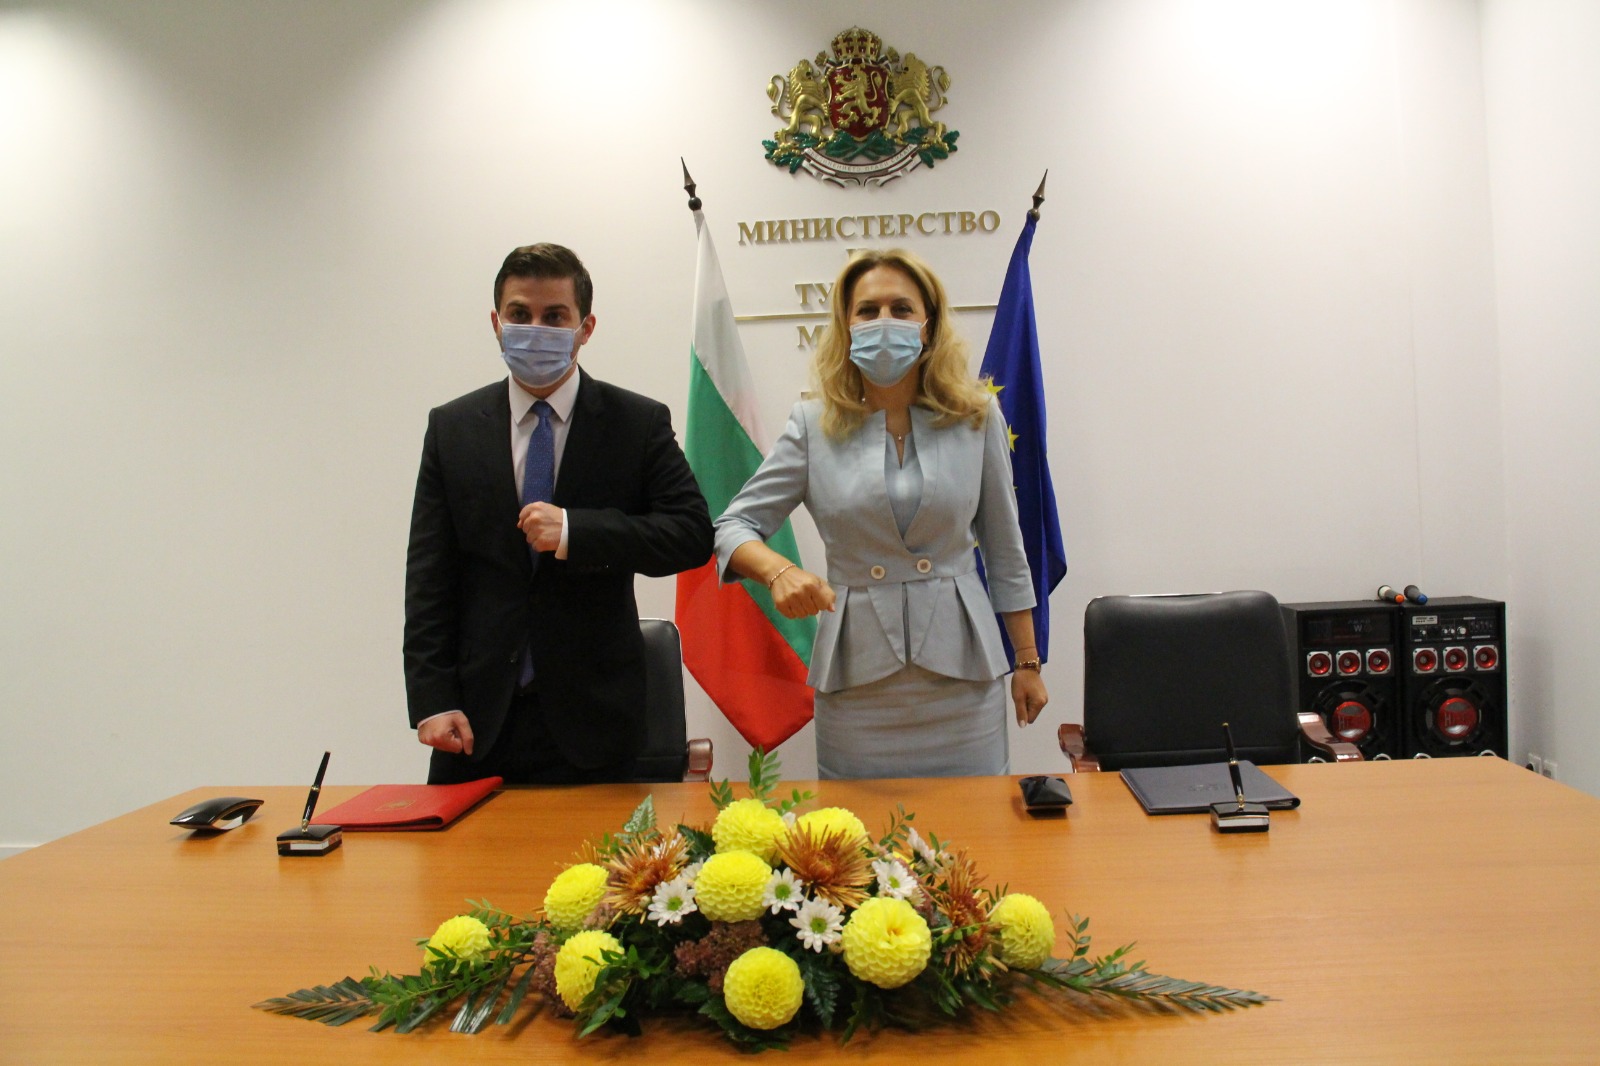 Bulgaristan ve Arnavutluk arasında turizm alanında işbirliği anlaşması